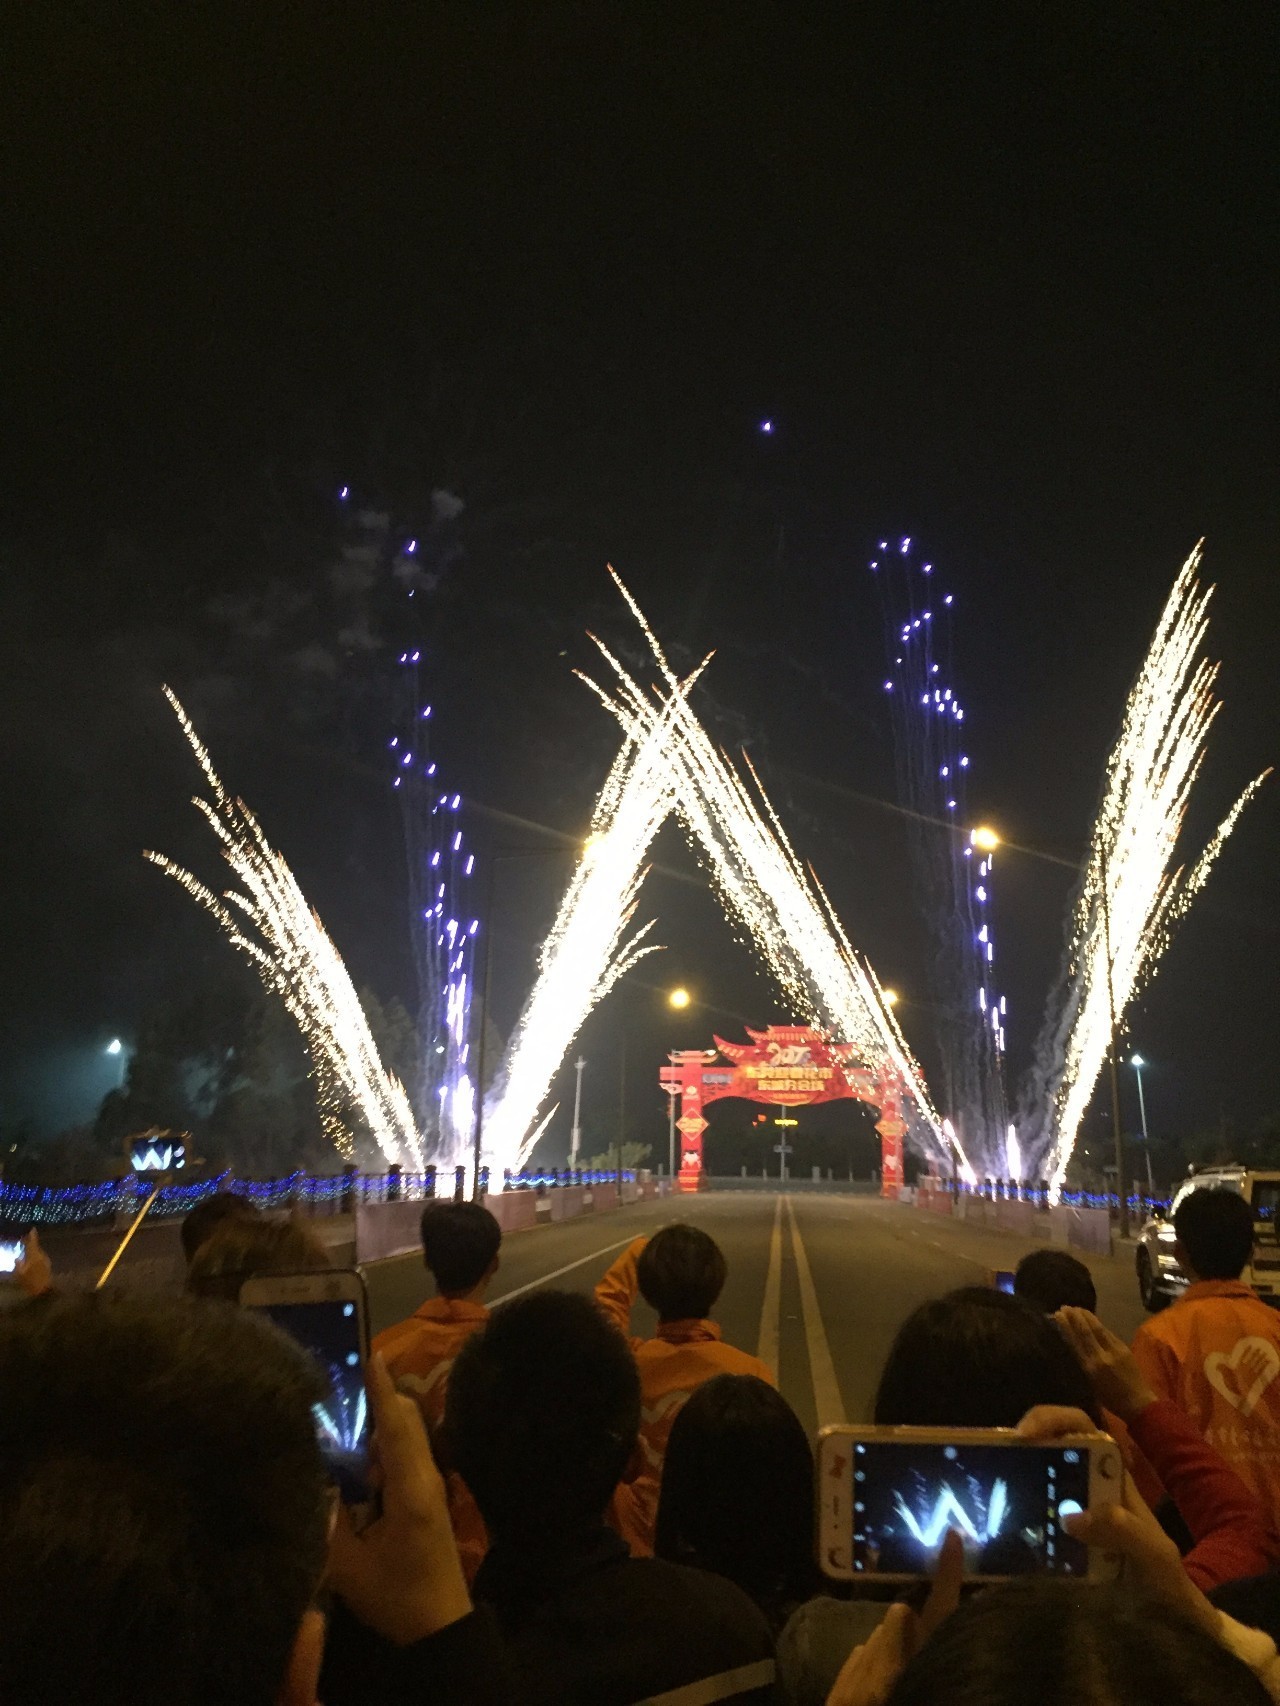 时隔10年,东莞城区终于有超壮观的烟花汇演,你今晚看到吗?